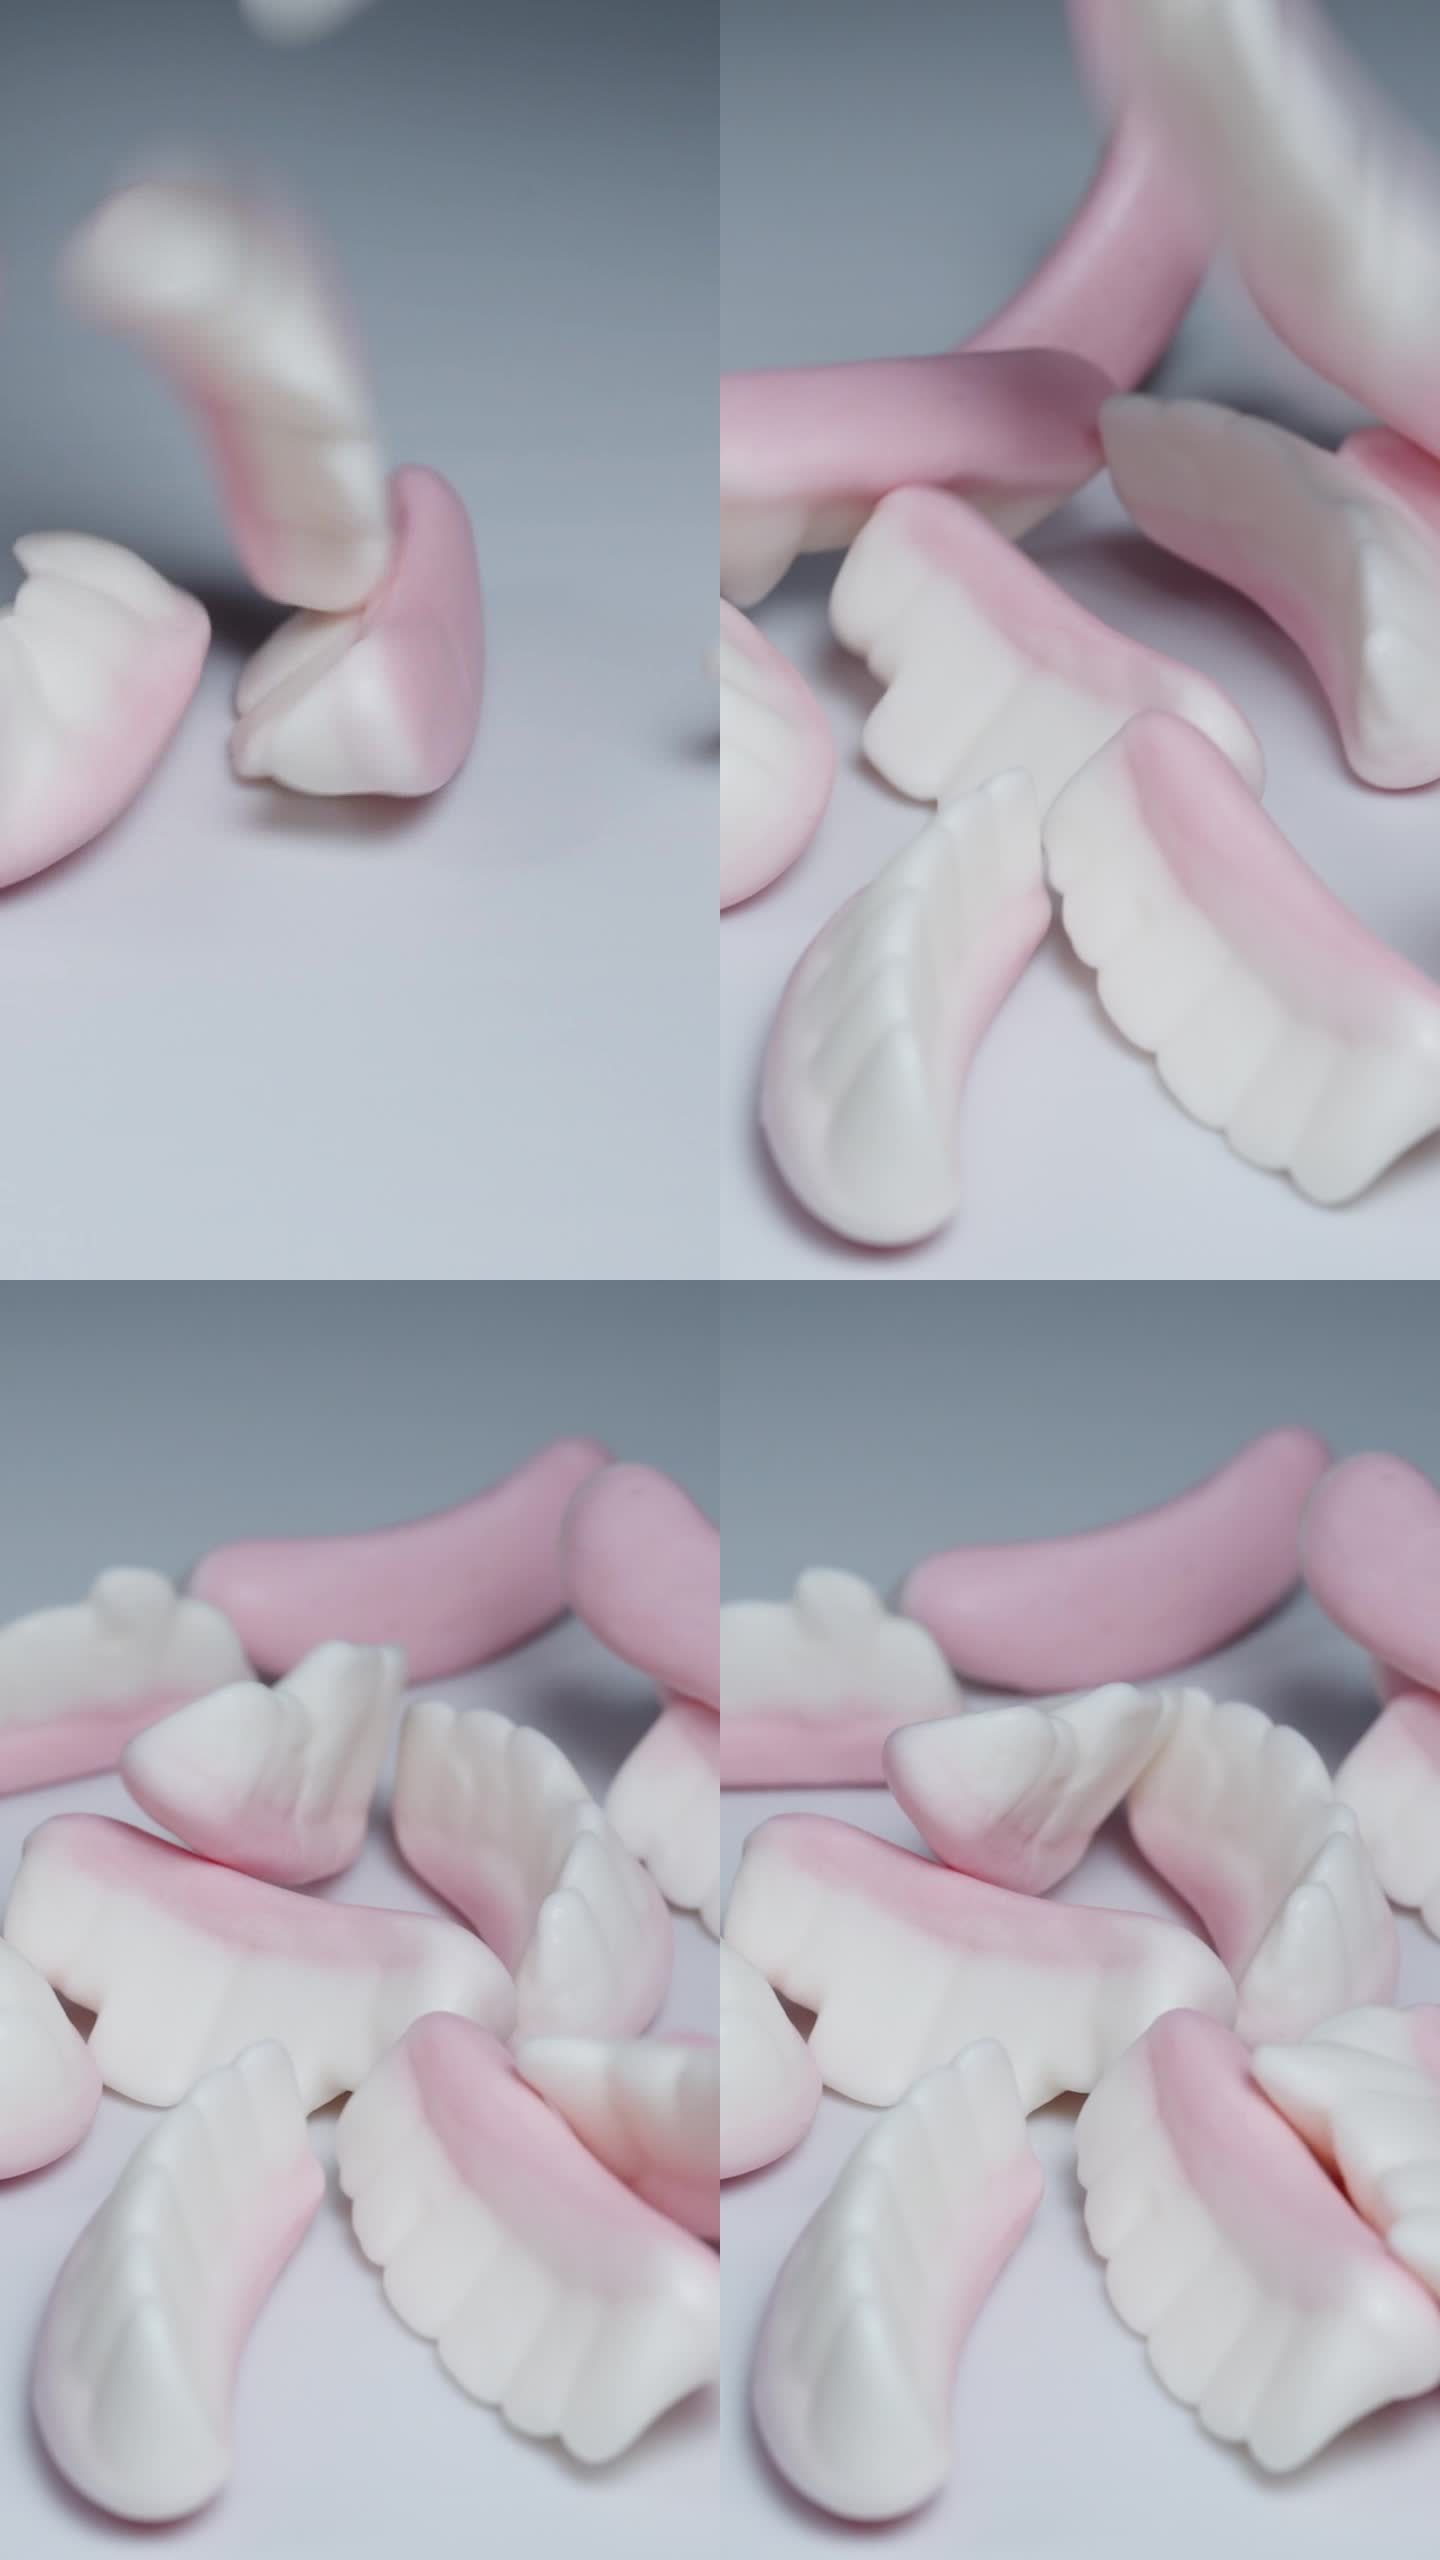 不同牙齿的颌形软糖落在白色的桌子上。